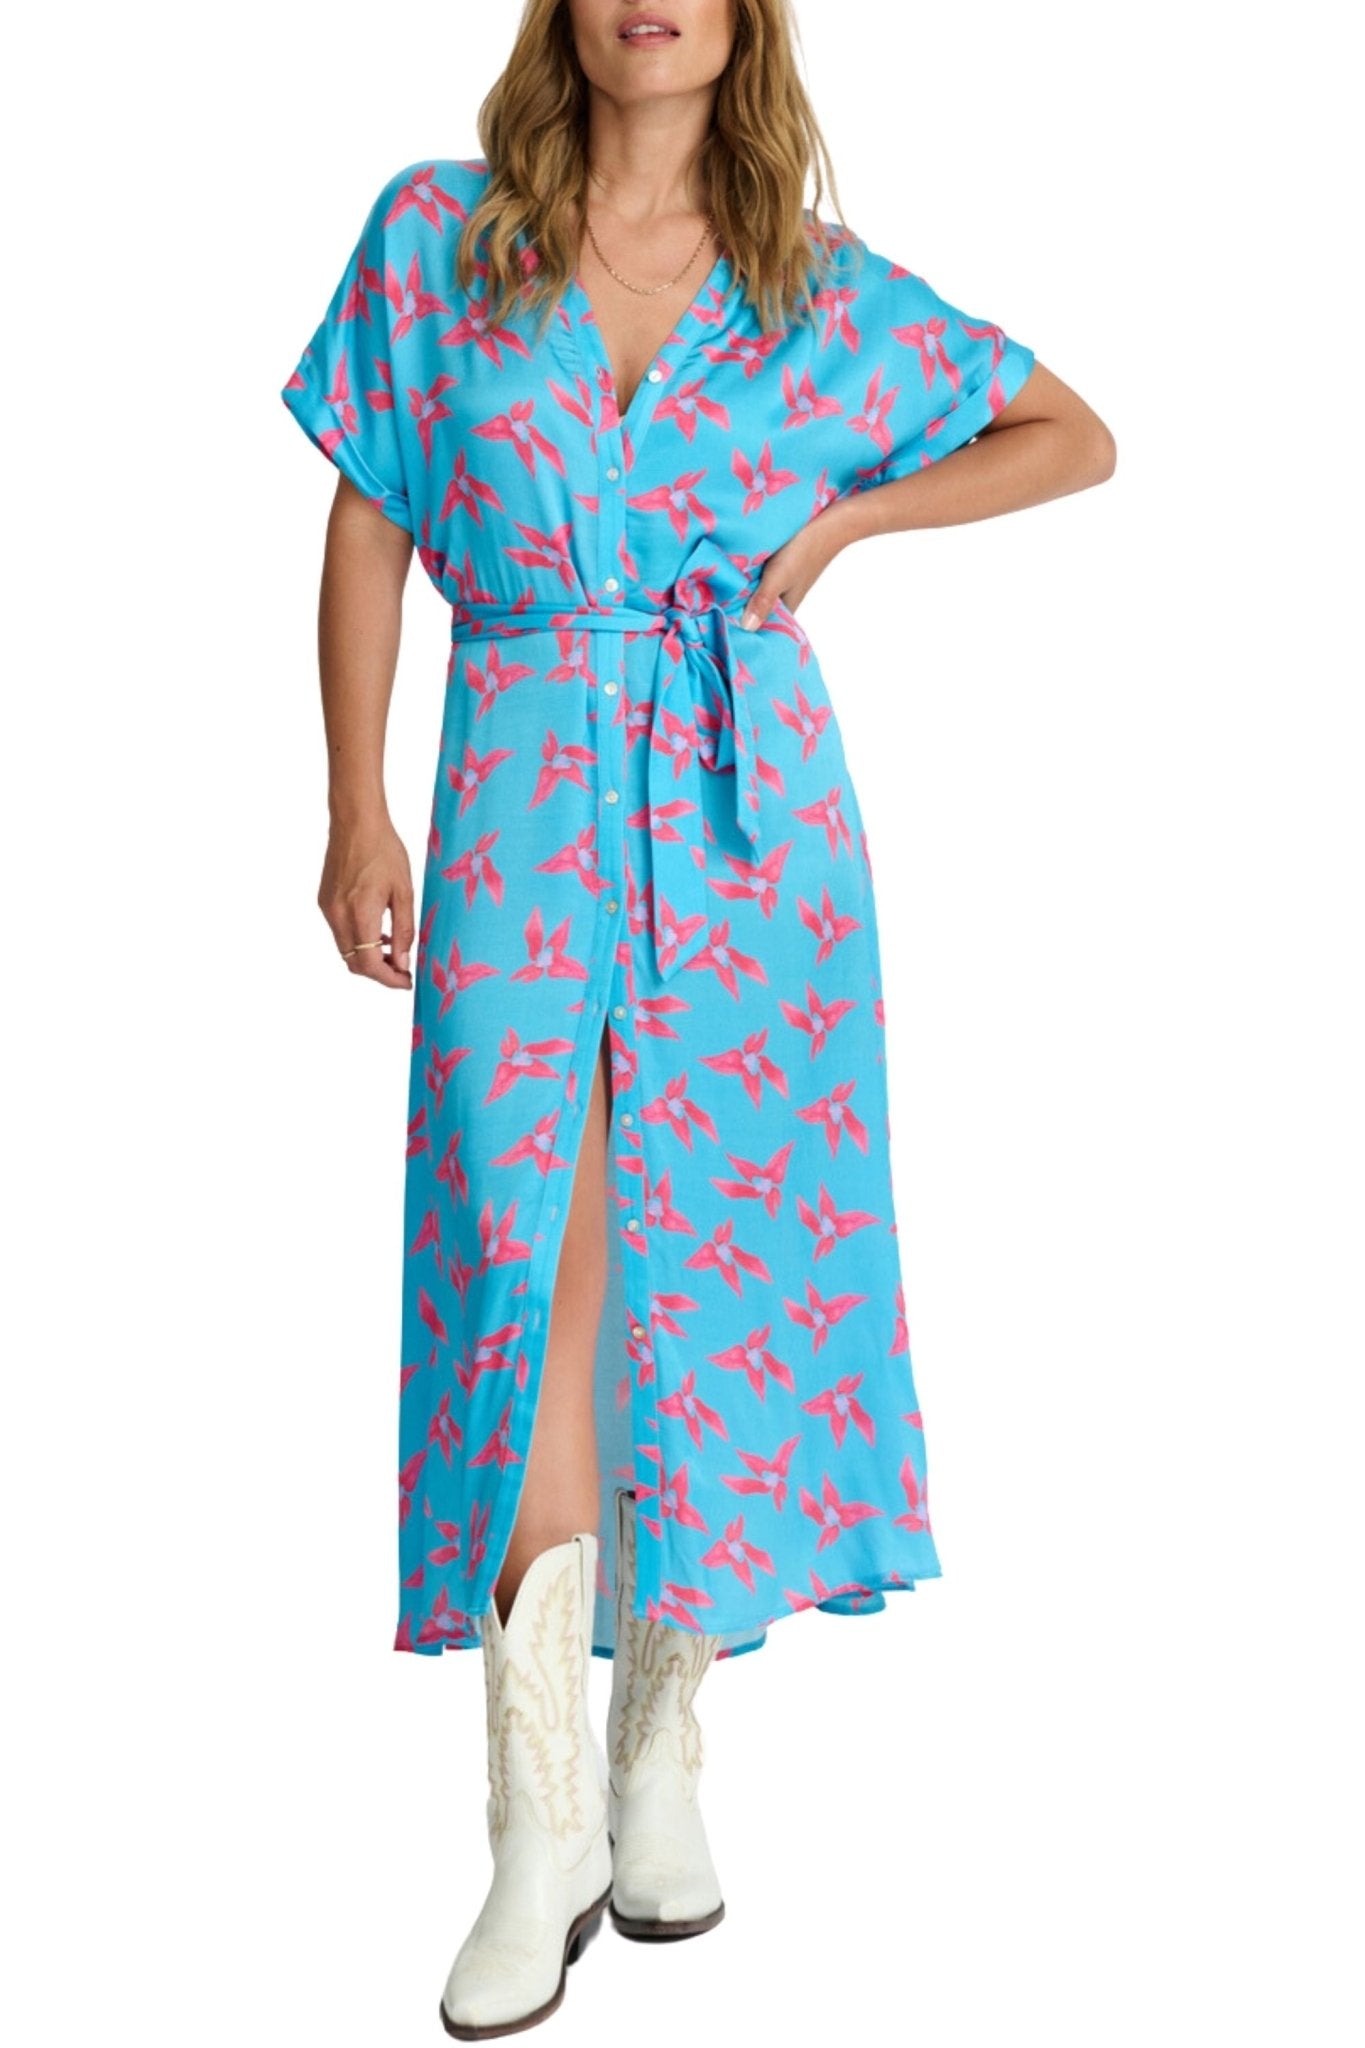 LYNN ORIGAMI FLOWER DRESS - SP7252